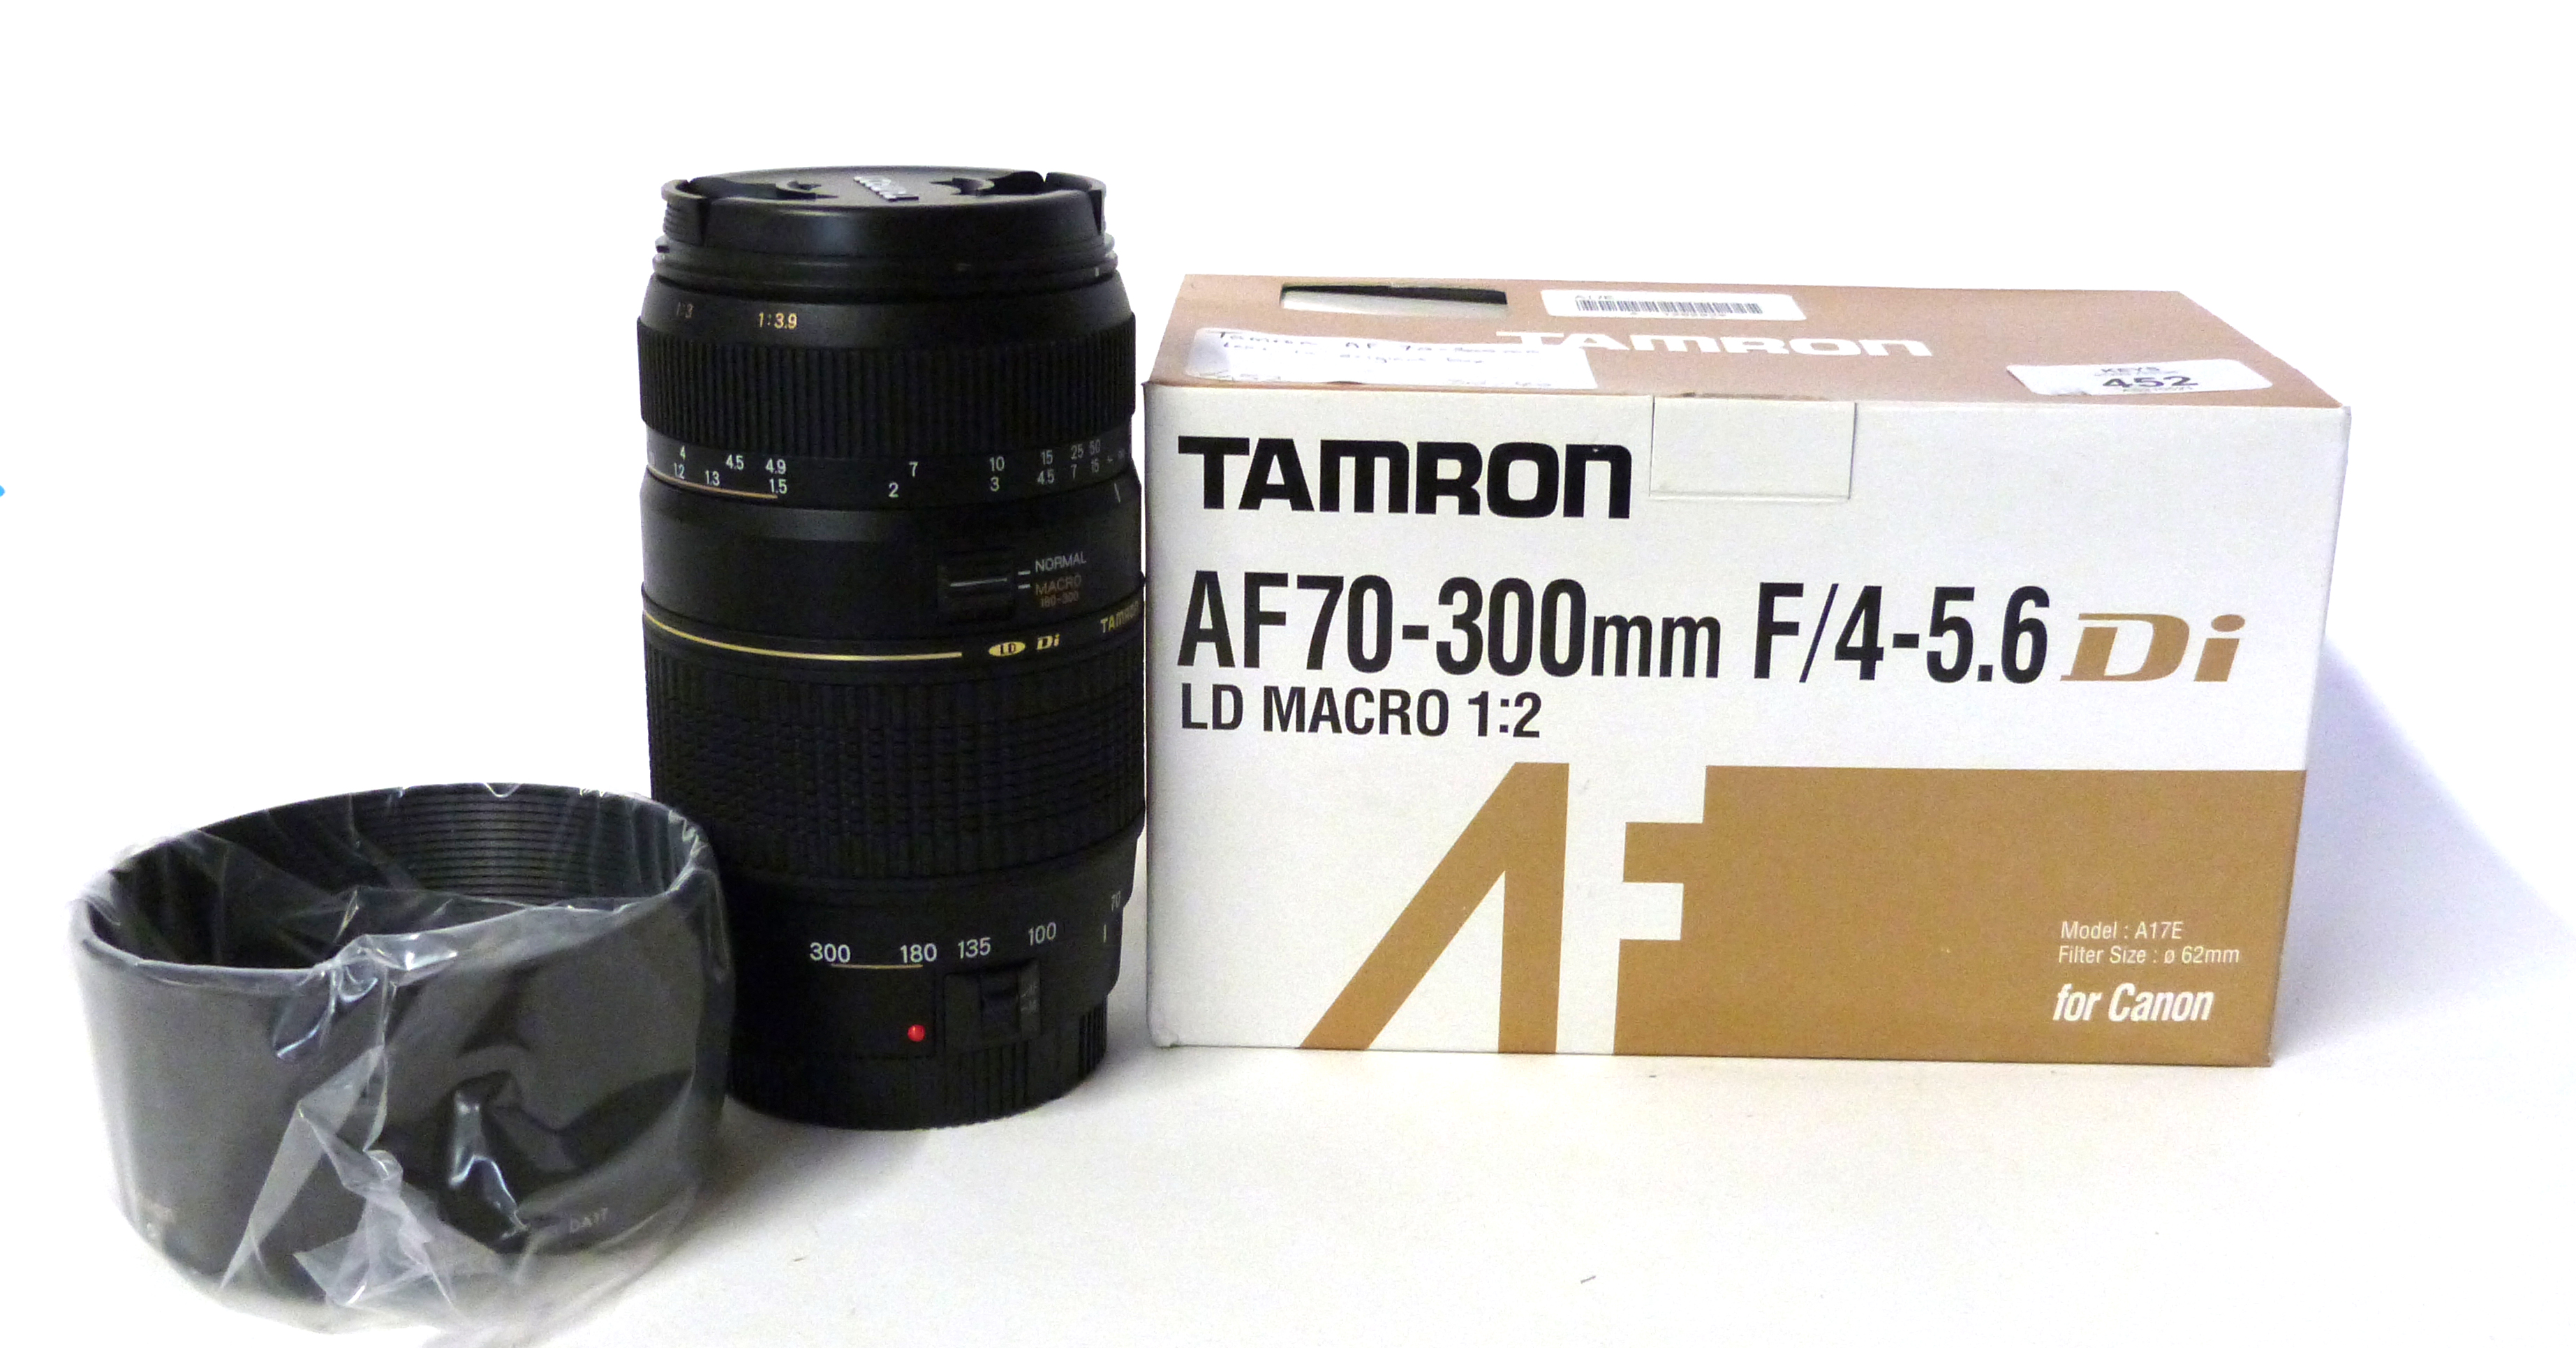 Tamron AF70-300mm lens in original box